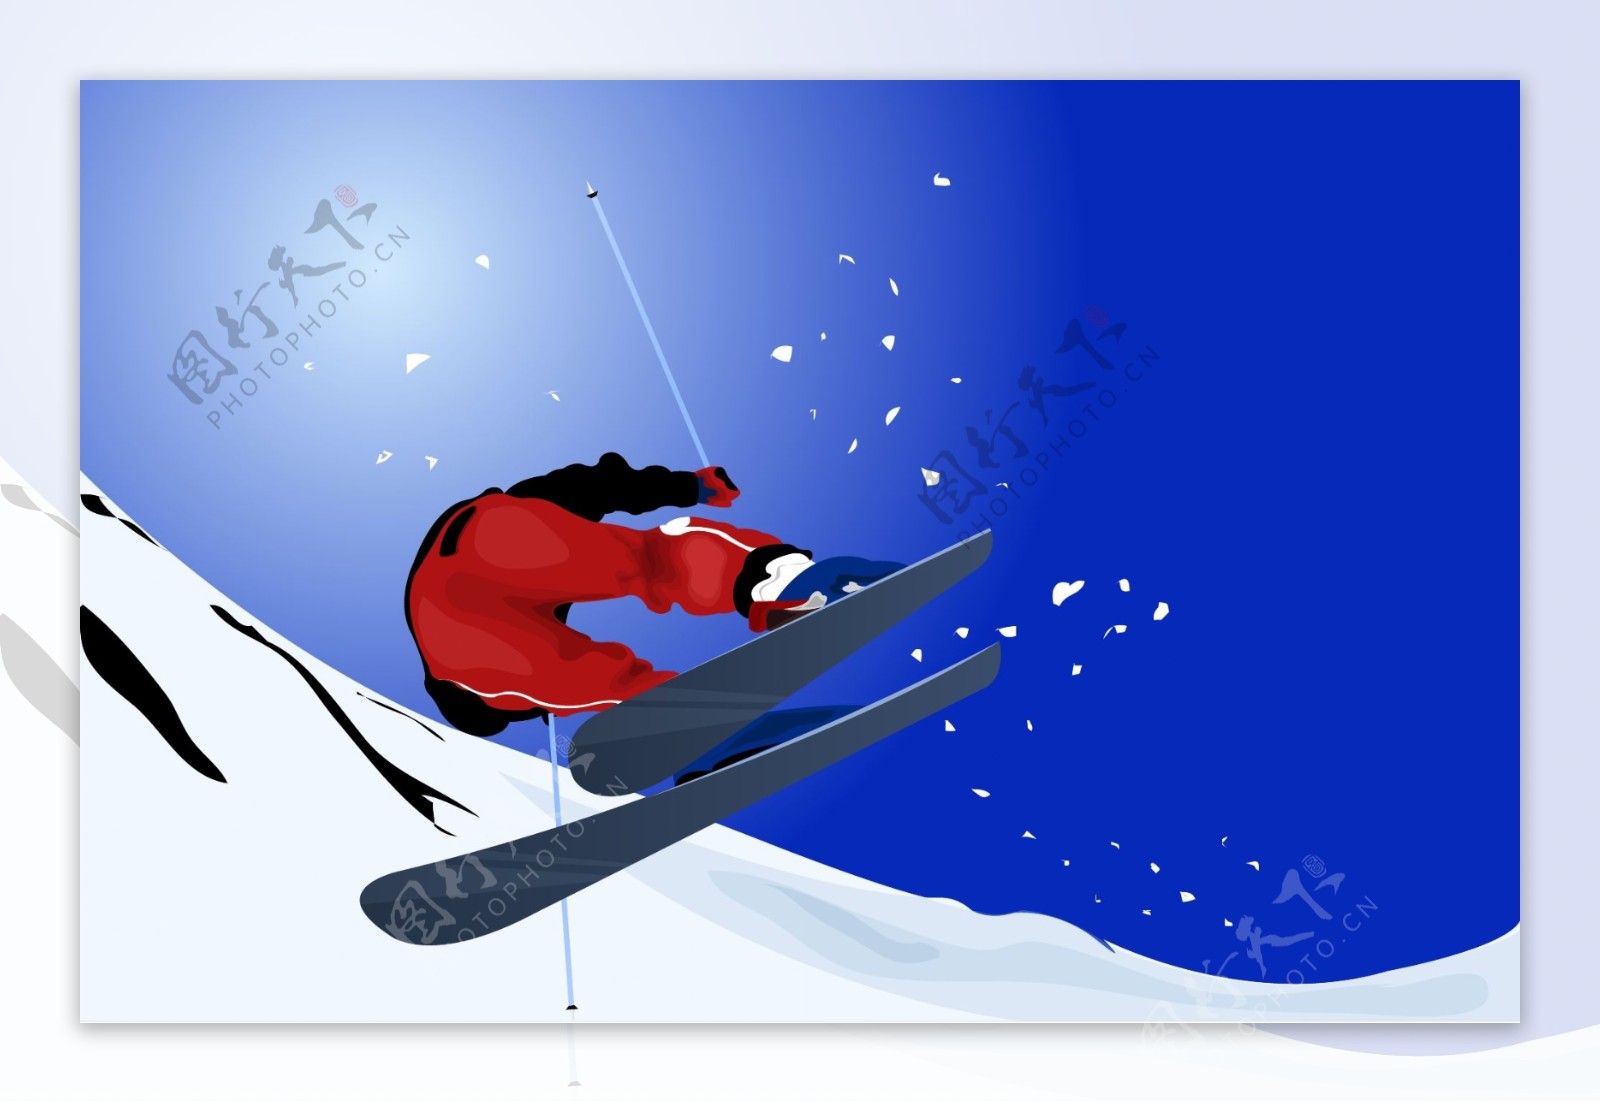 极限滑雪运动